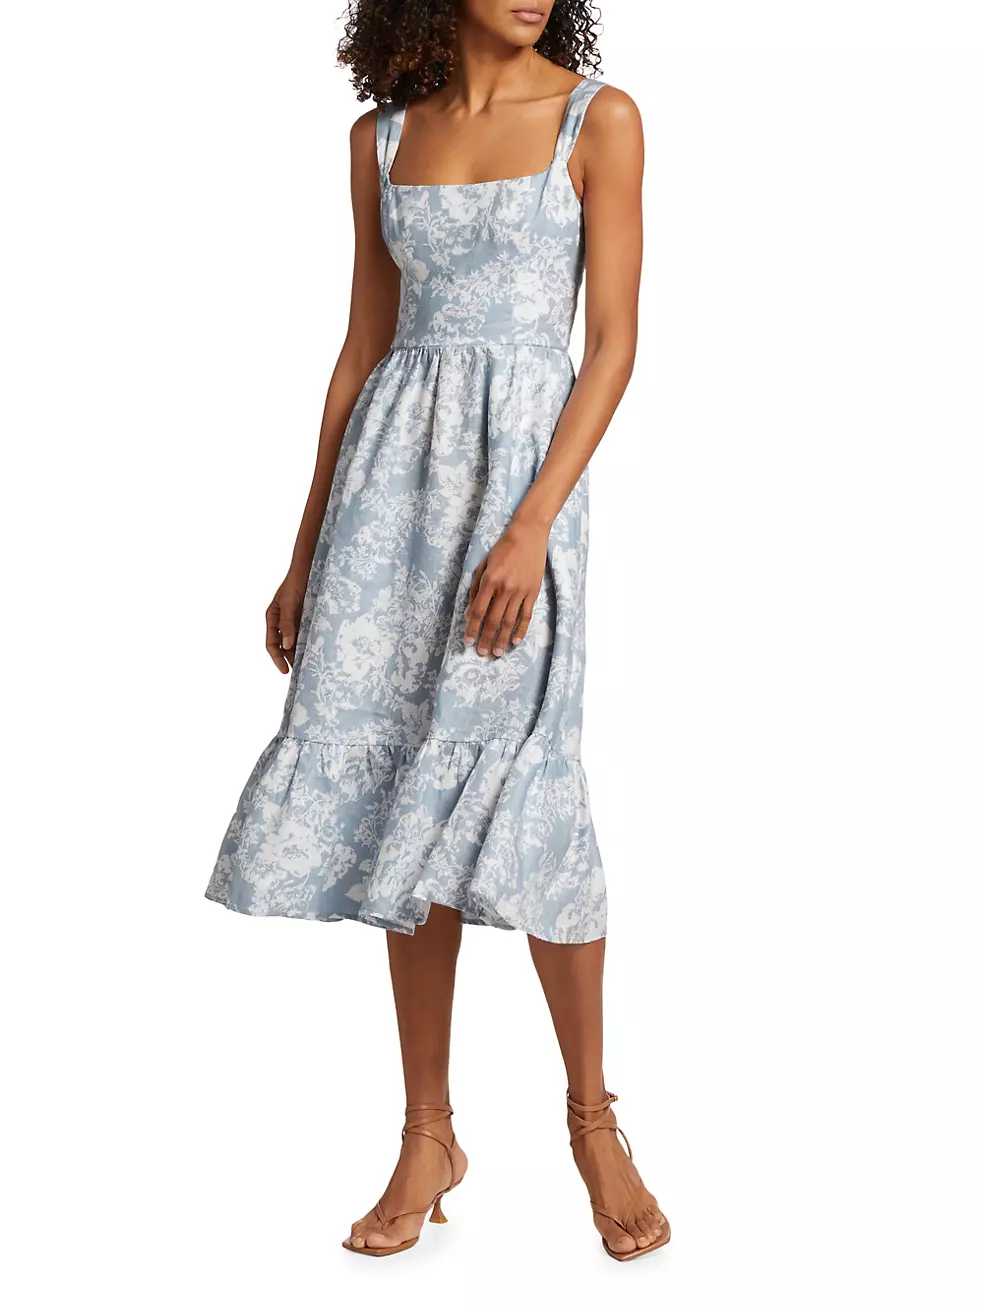 Shop 10 Stunning Reformation Dresses for Summer